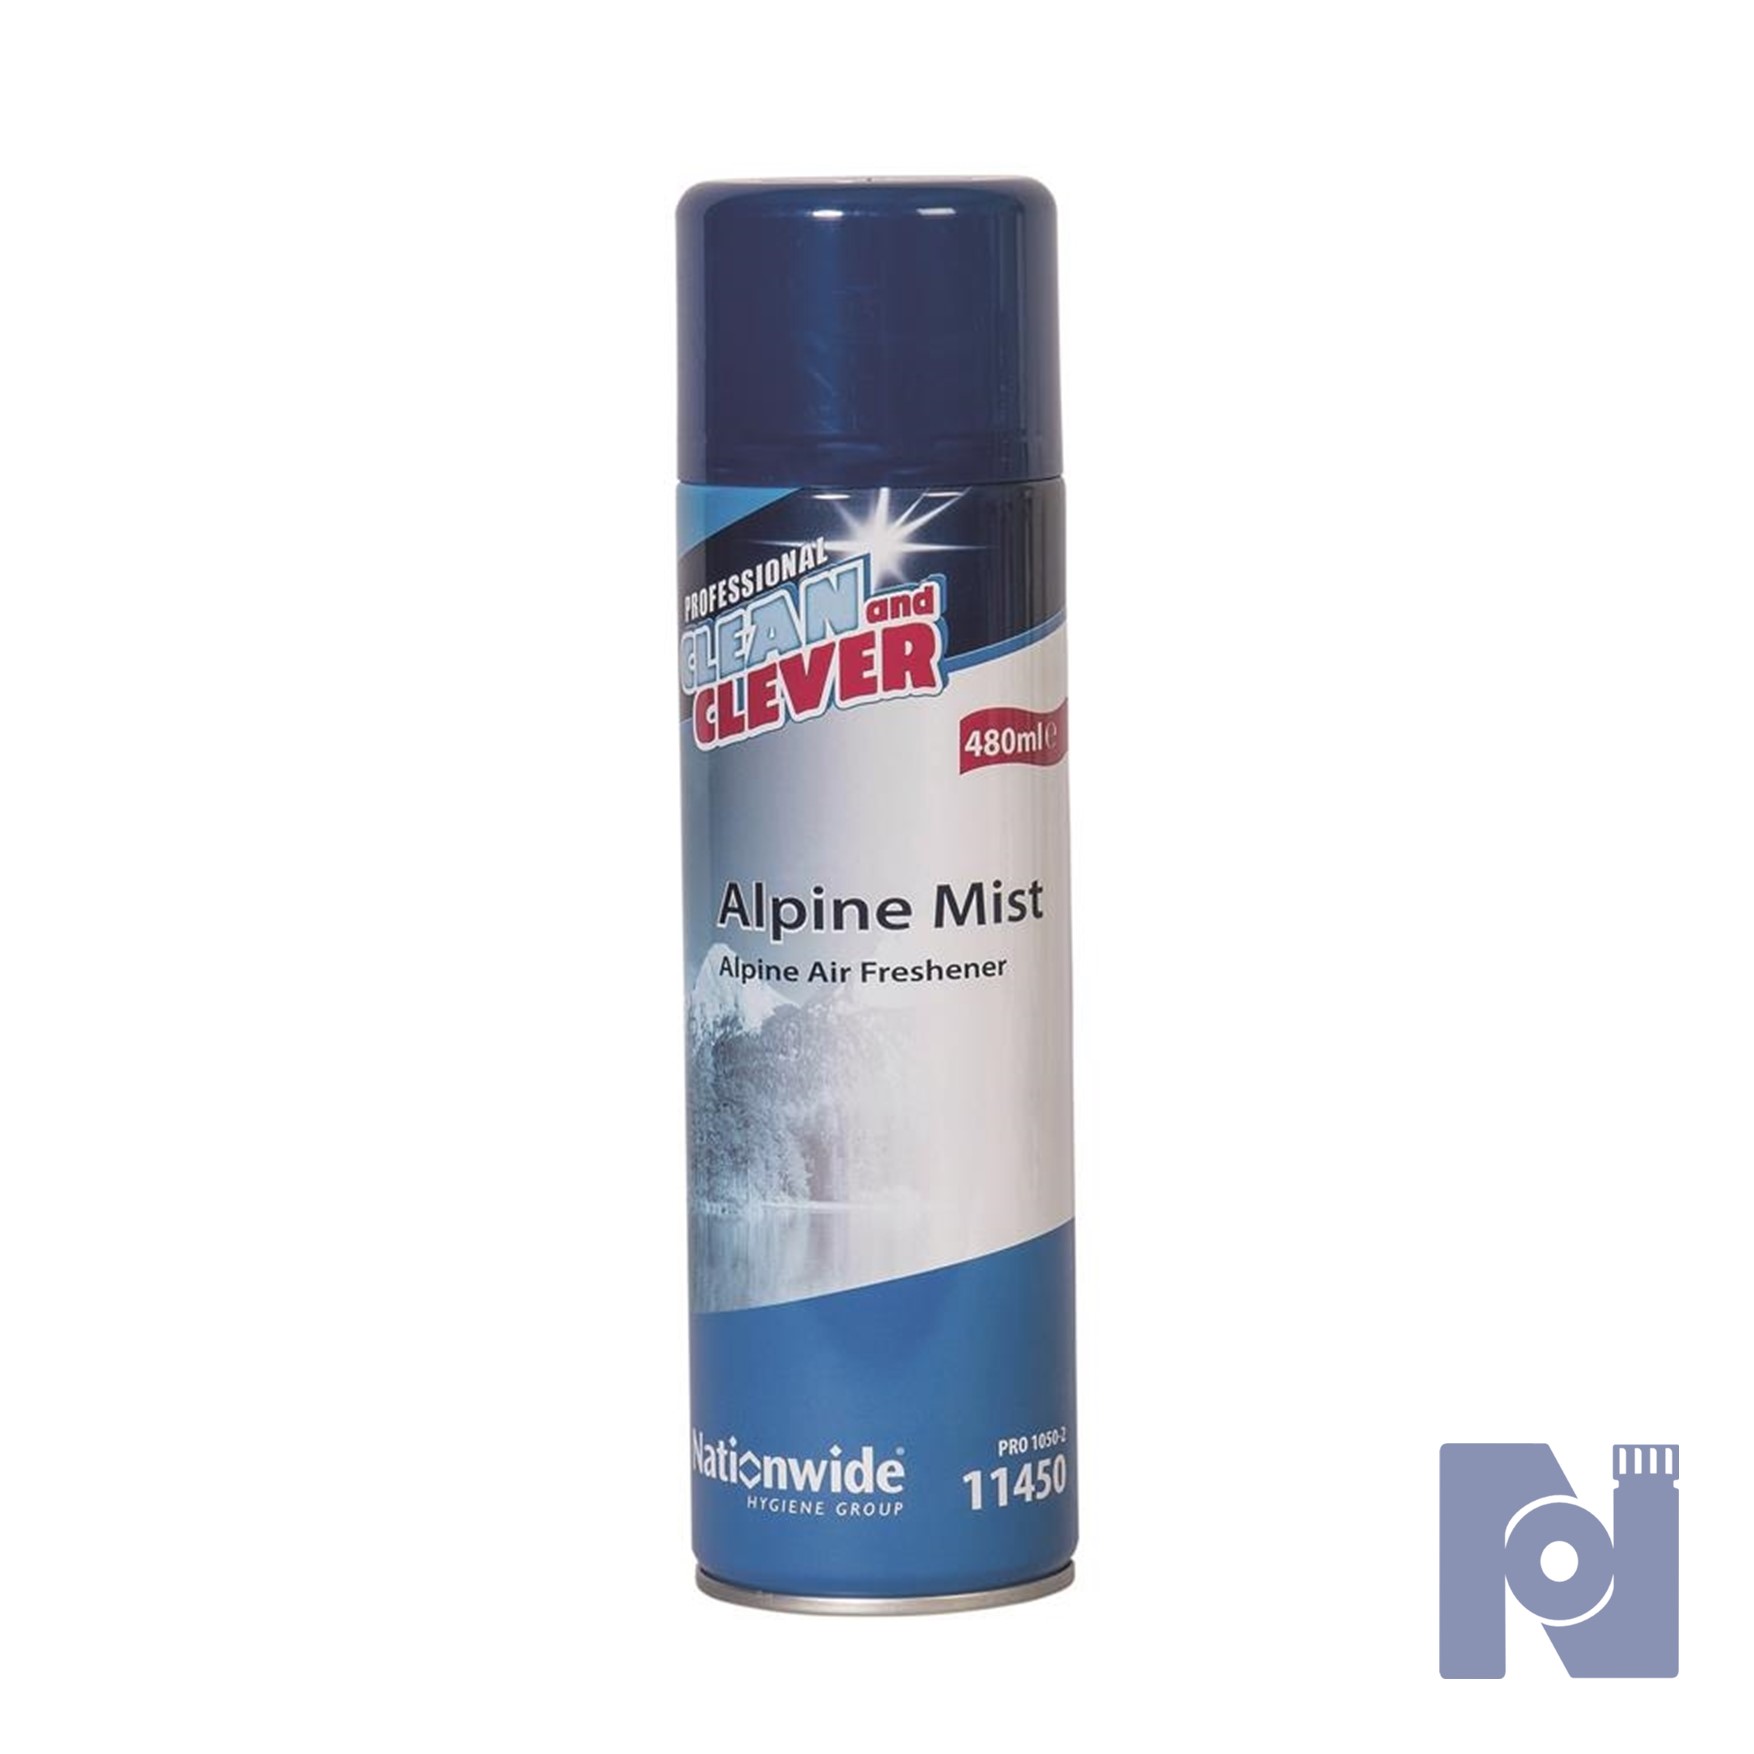 Clean & Clever Alpine Mist Air Freshener